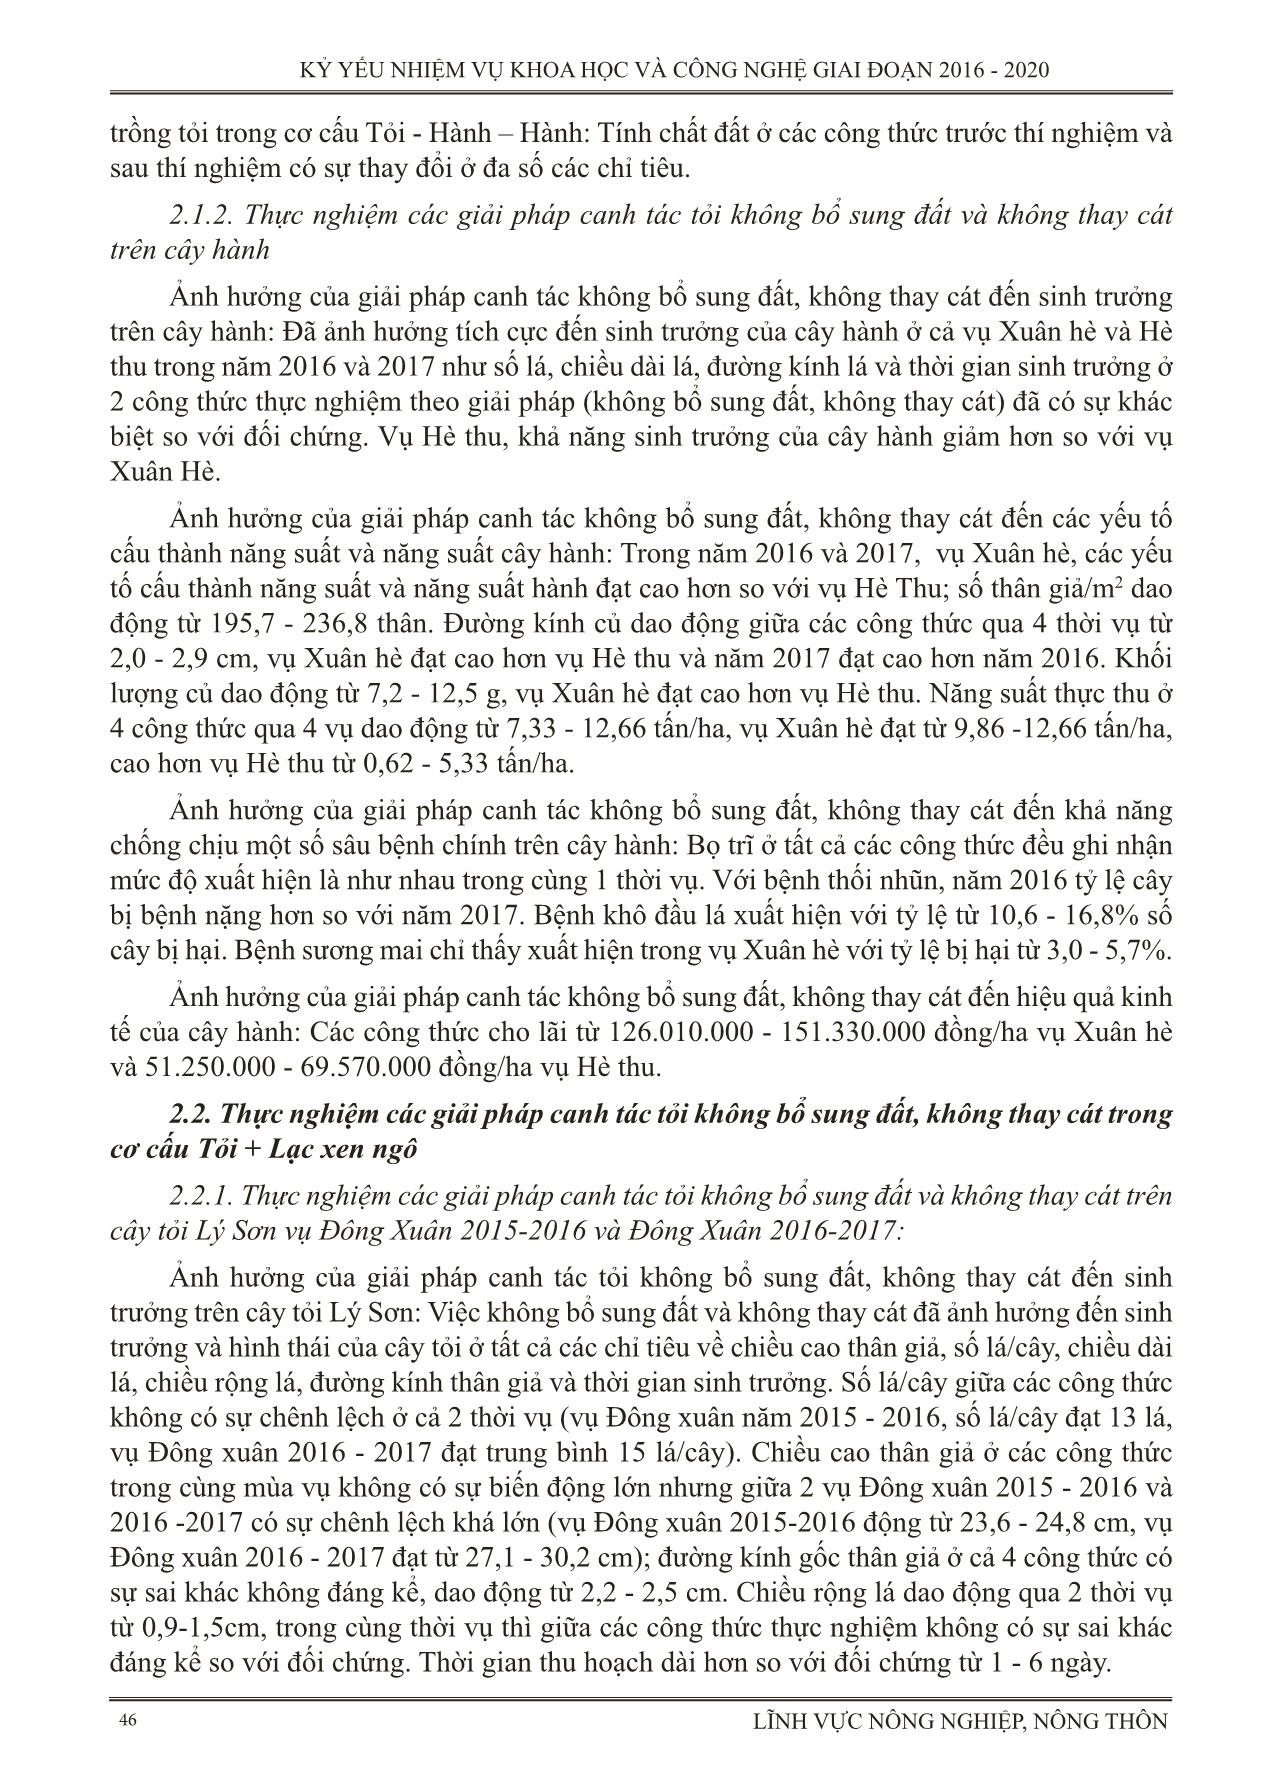 Thực nghiệm các giải pháp kỹ thuật trong canh tác tỏi ở huyện đảo Lý Sơn tỉnh Quảng Ngãi (Canh tác tỏi không bổ sung đất, không thay cát) trang 4